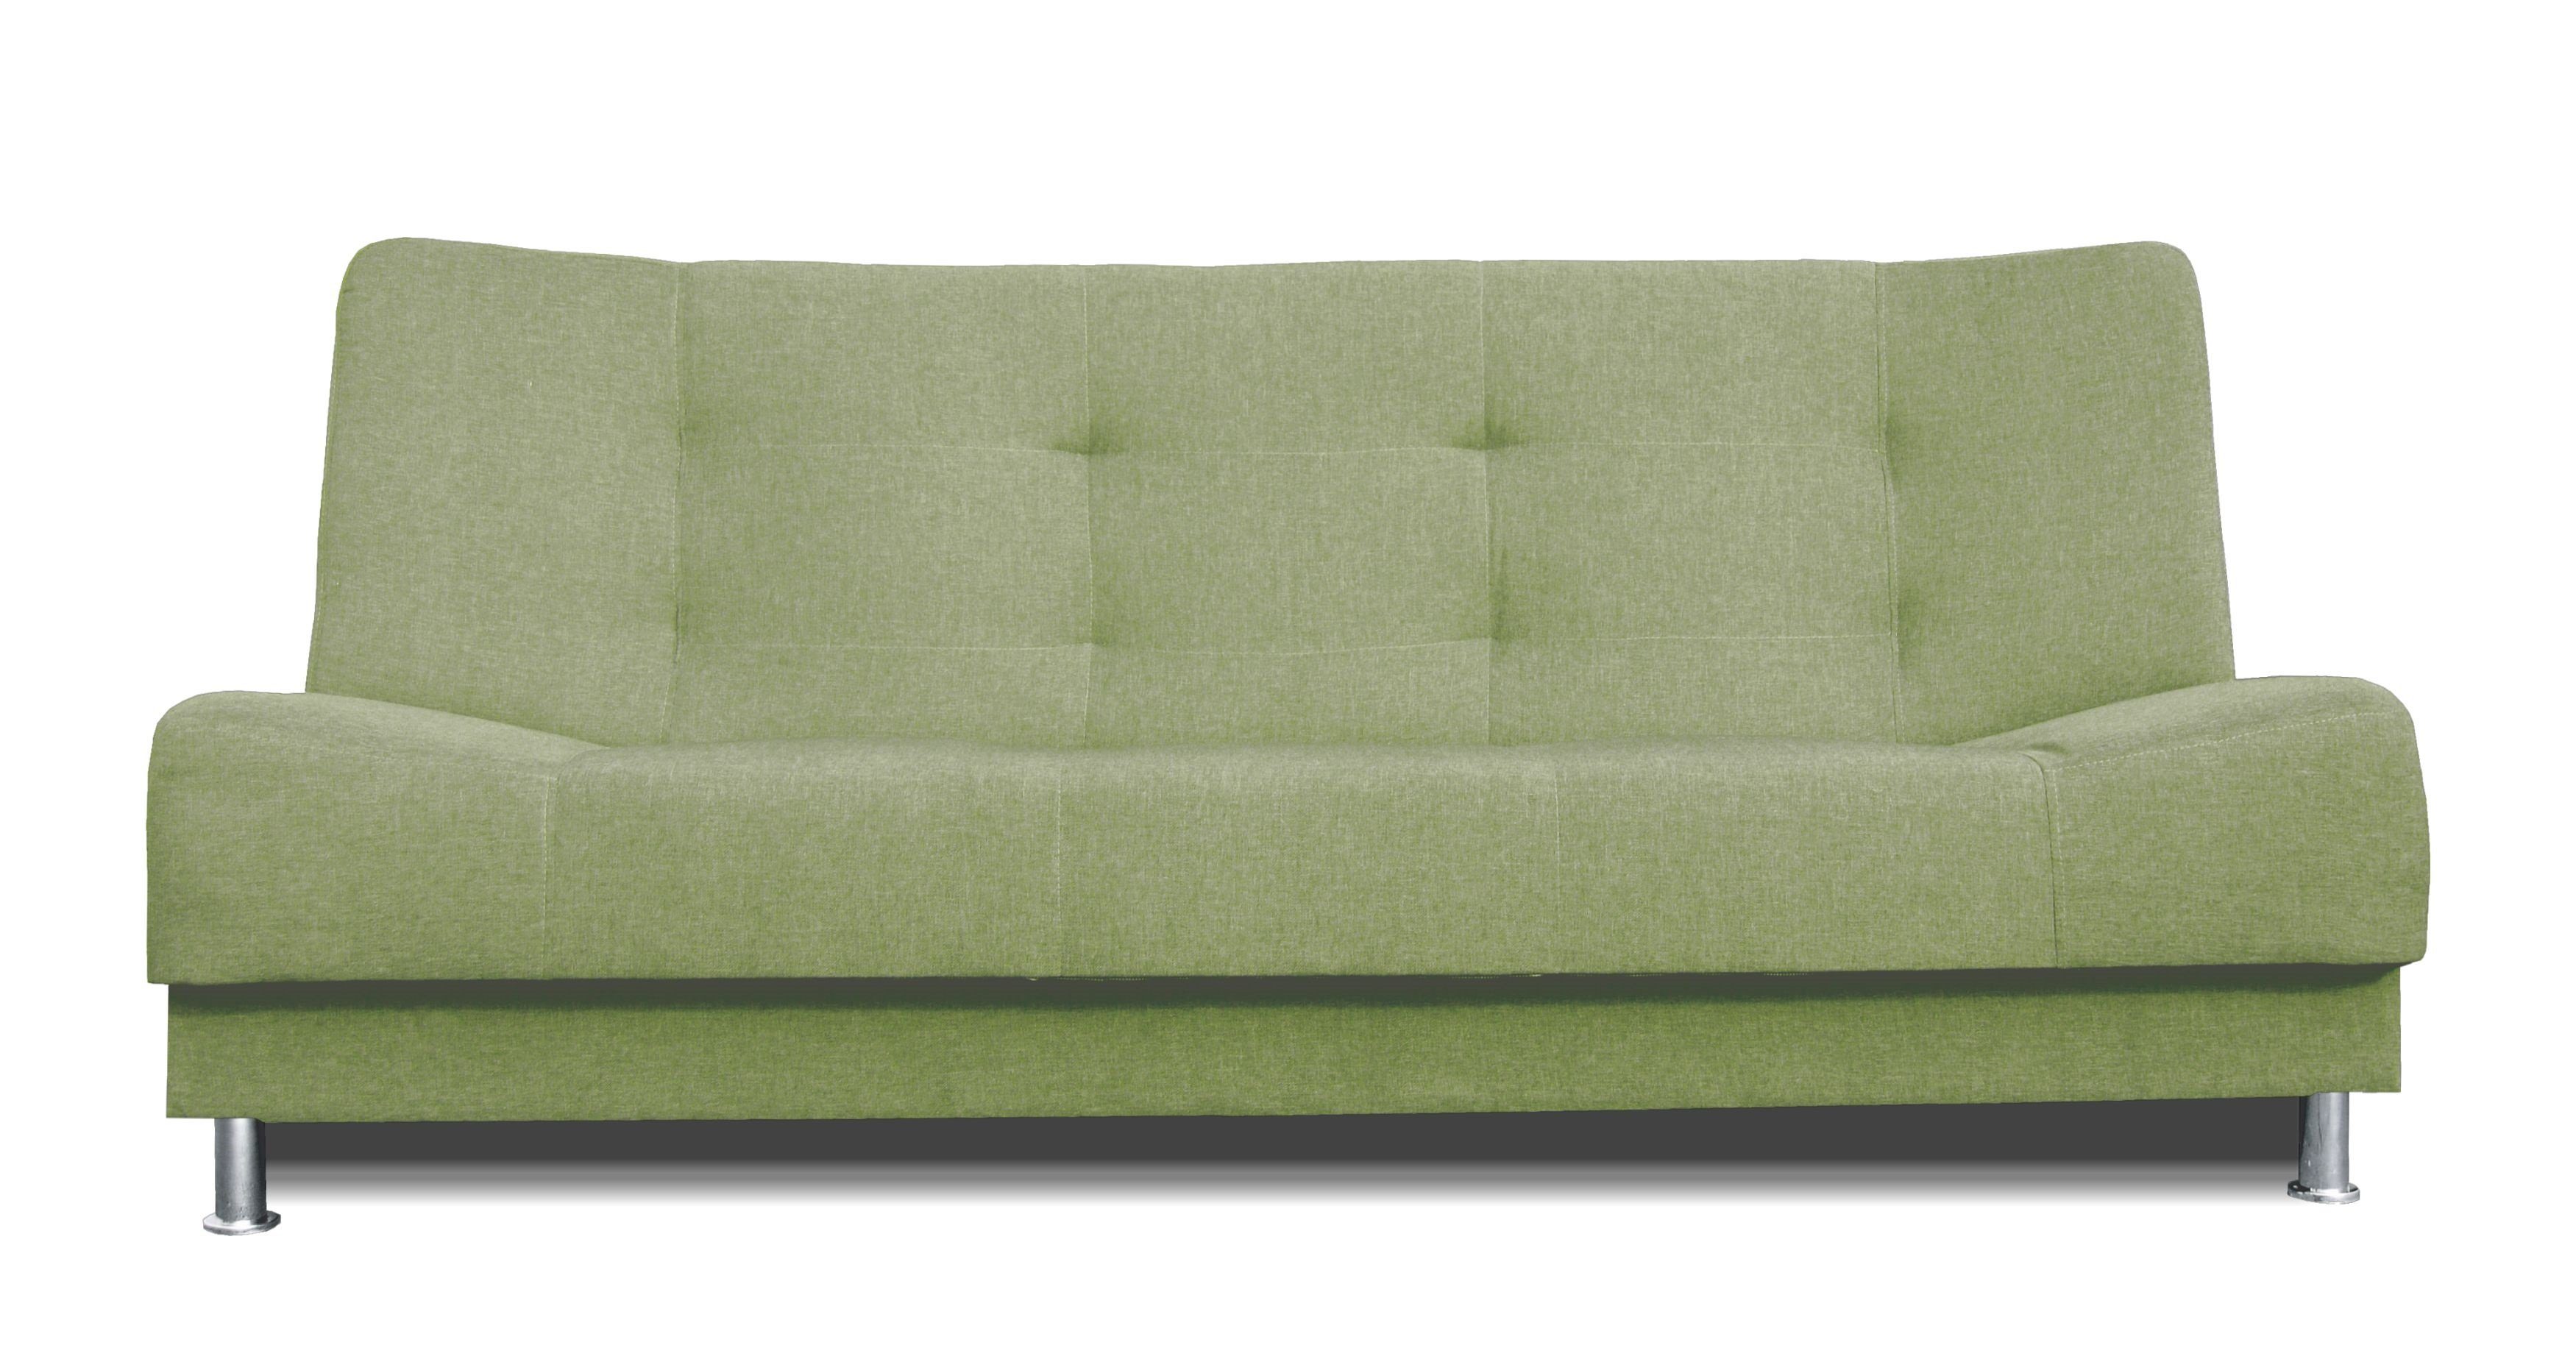 Dreisitzige Vittoria mit Dreisitzer-Sofa Khaki Schlaffunktion, Bettzeugbehälter, 3-Sitzer Couch Siblo